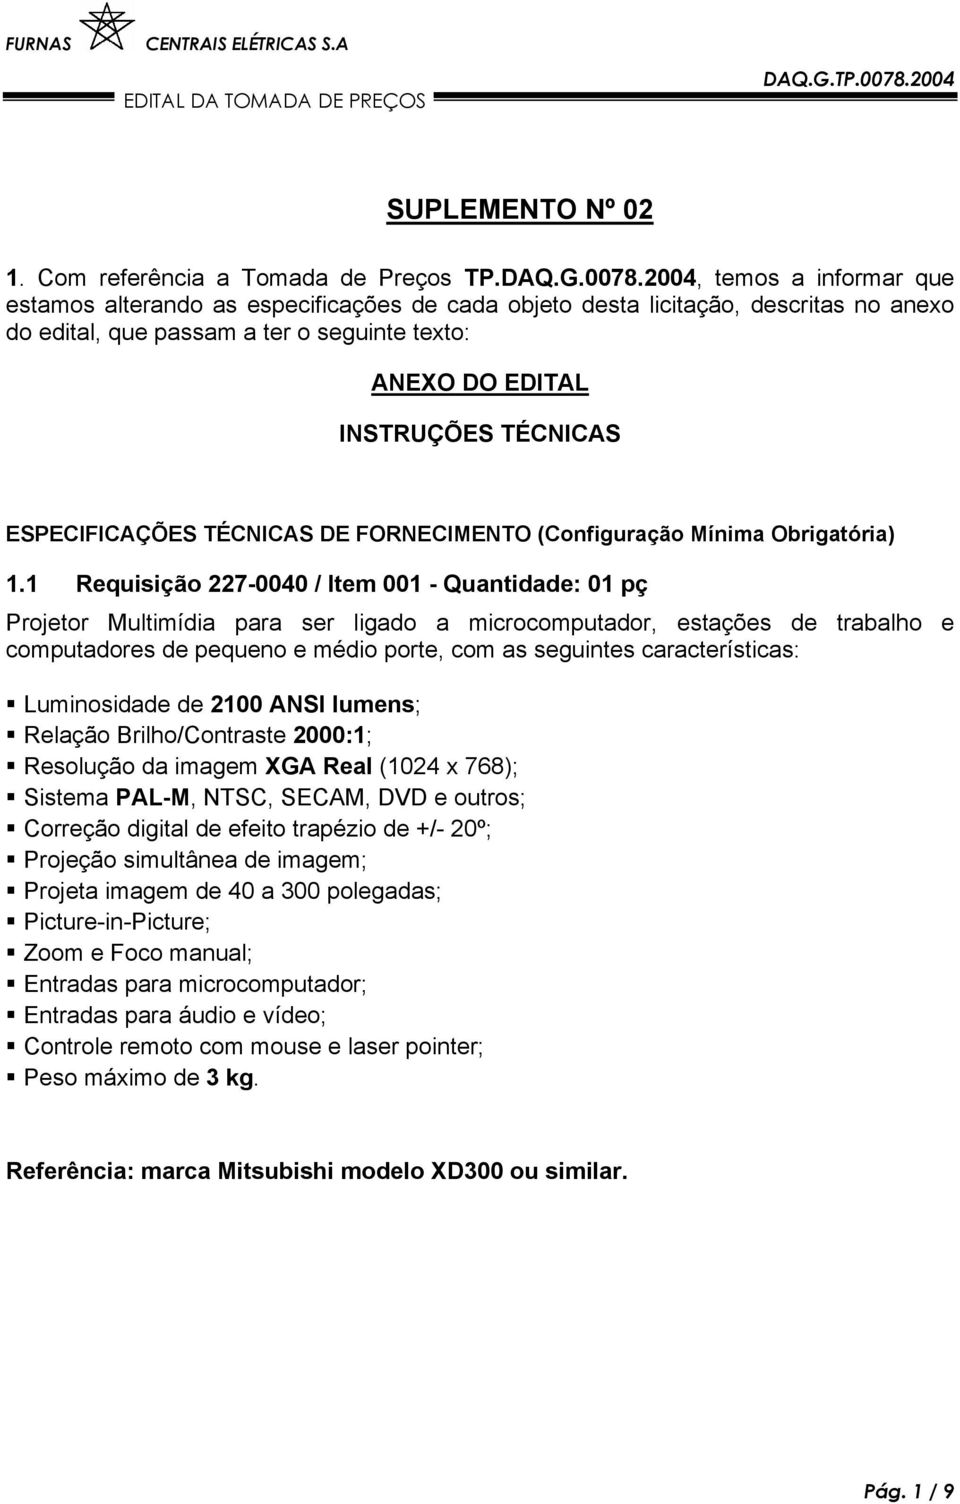 ESPECIFICAÇÕES TÉCNICAS DE FORNECIMENTO (Configuração Mínima Obrigatória) 1.